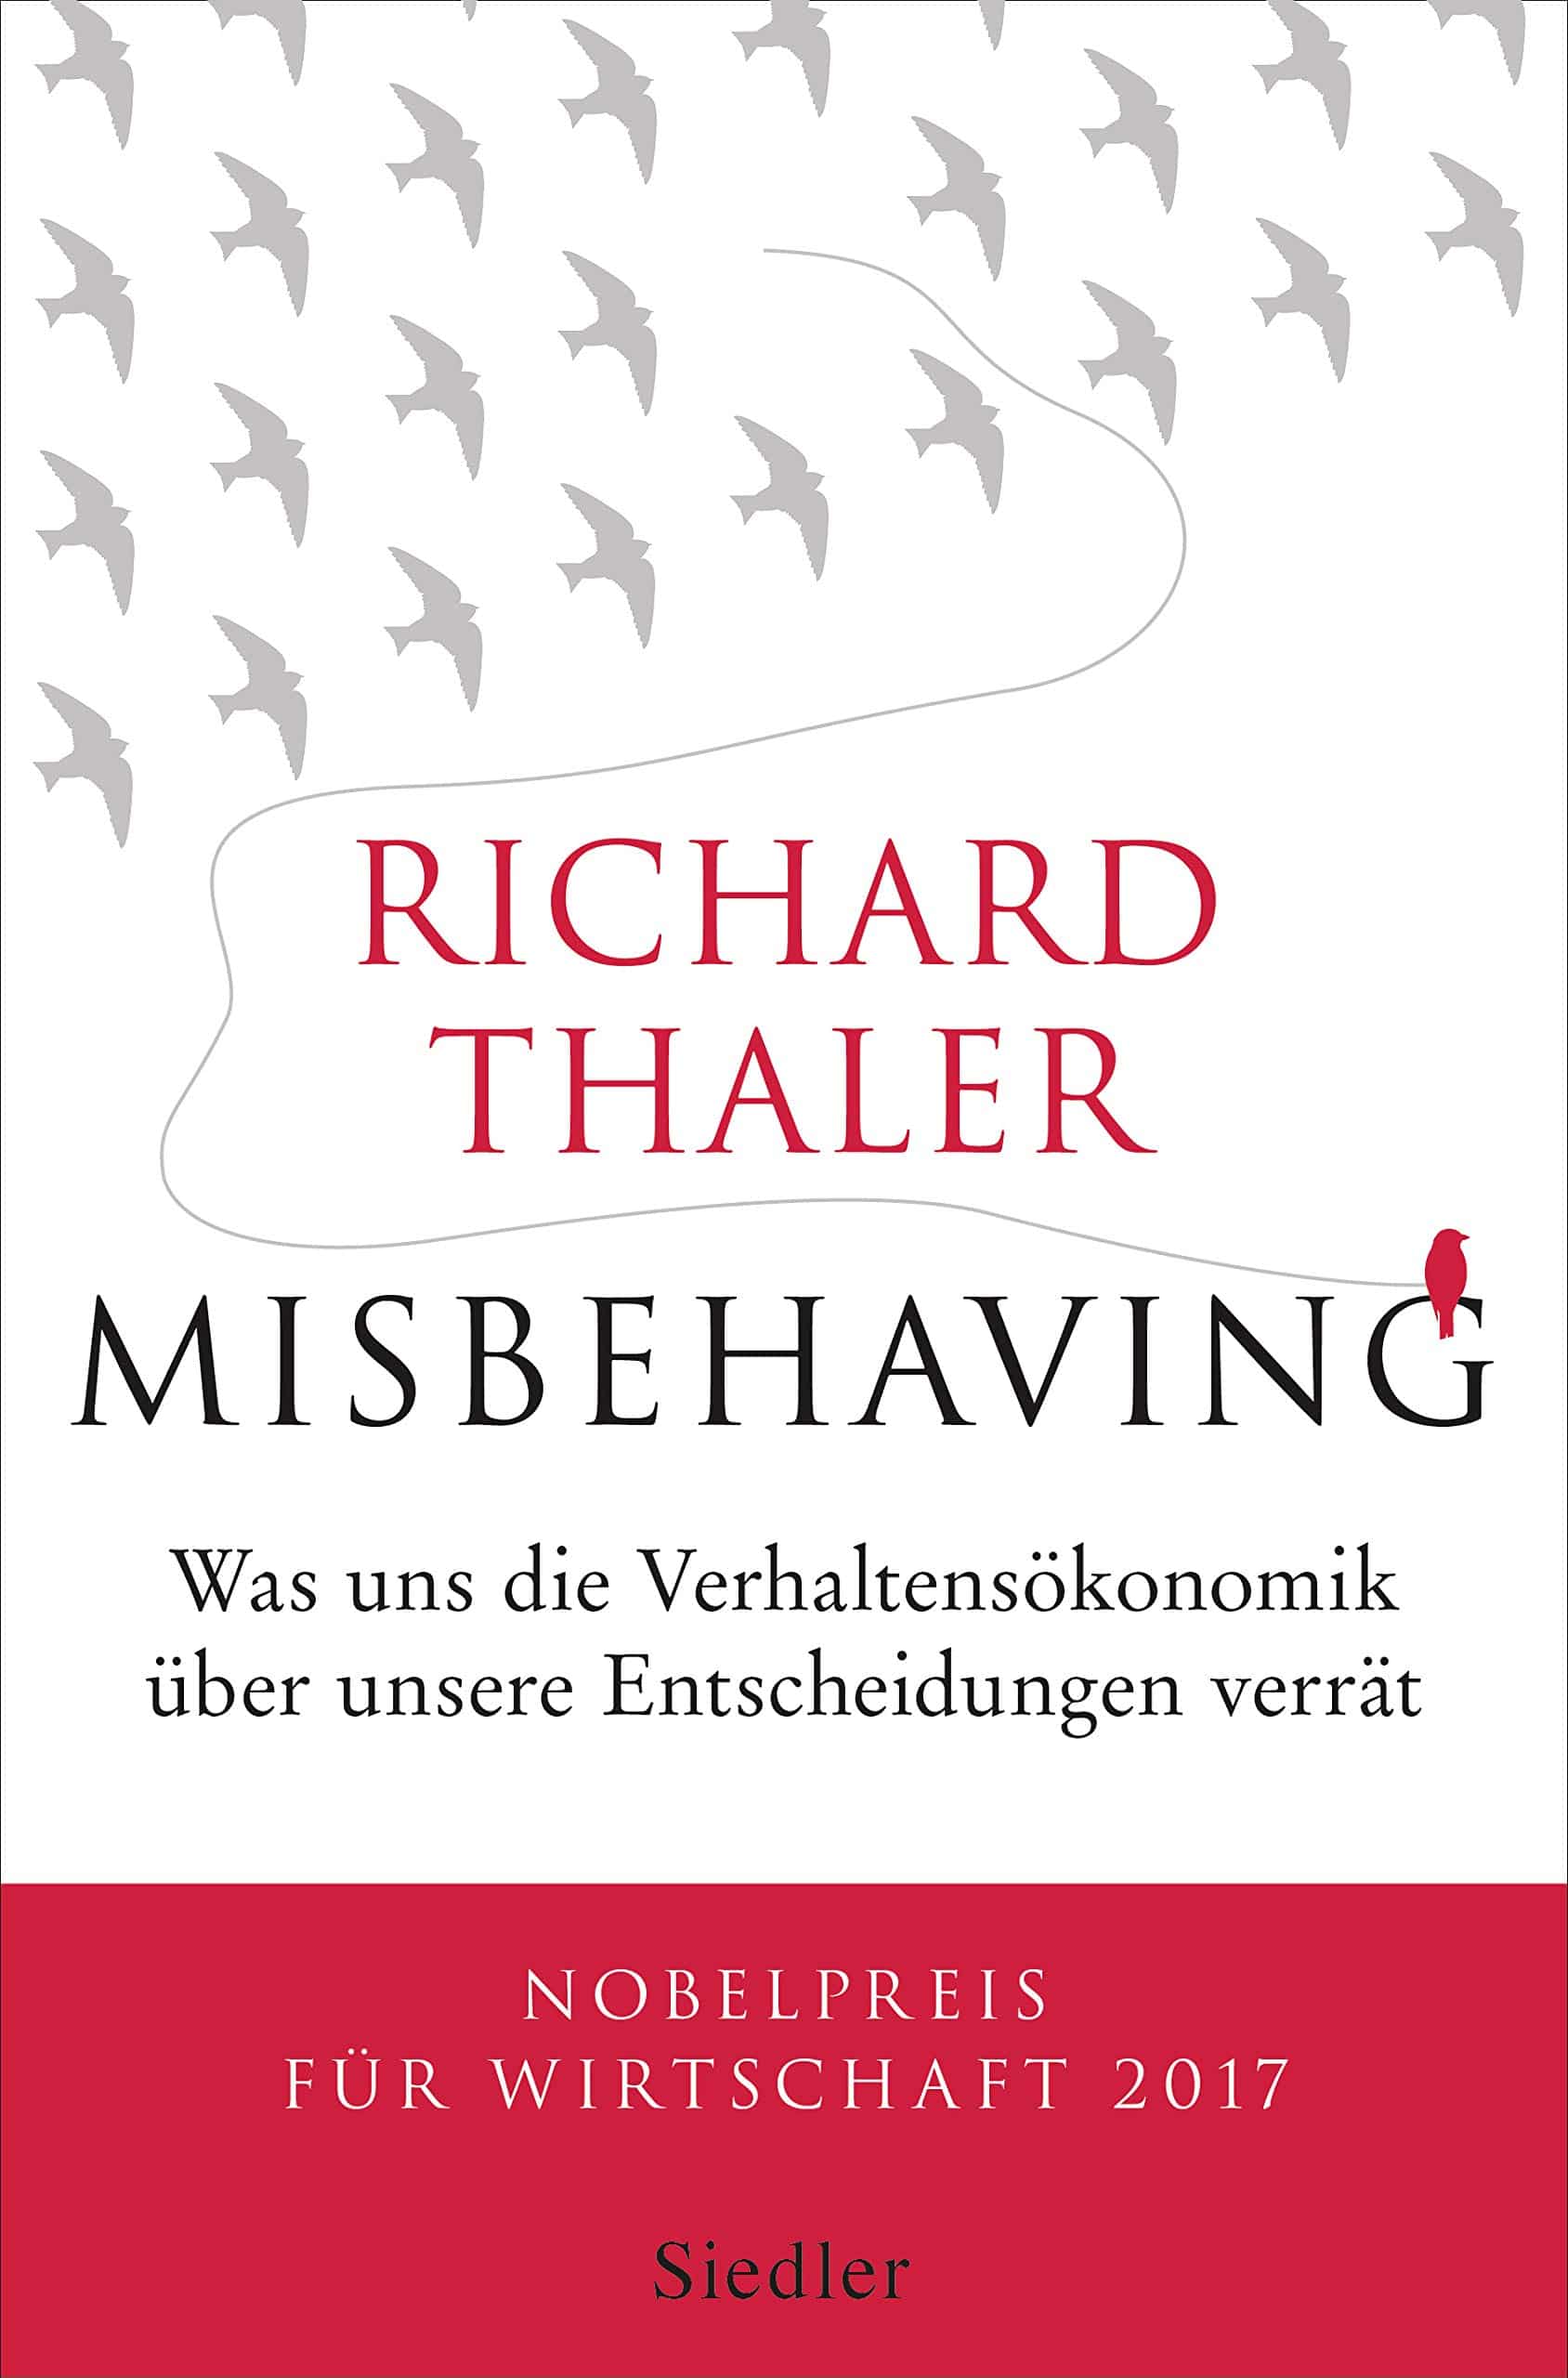 Richard Thaler - Misbehaving